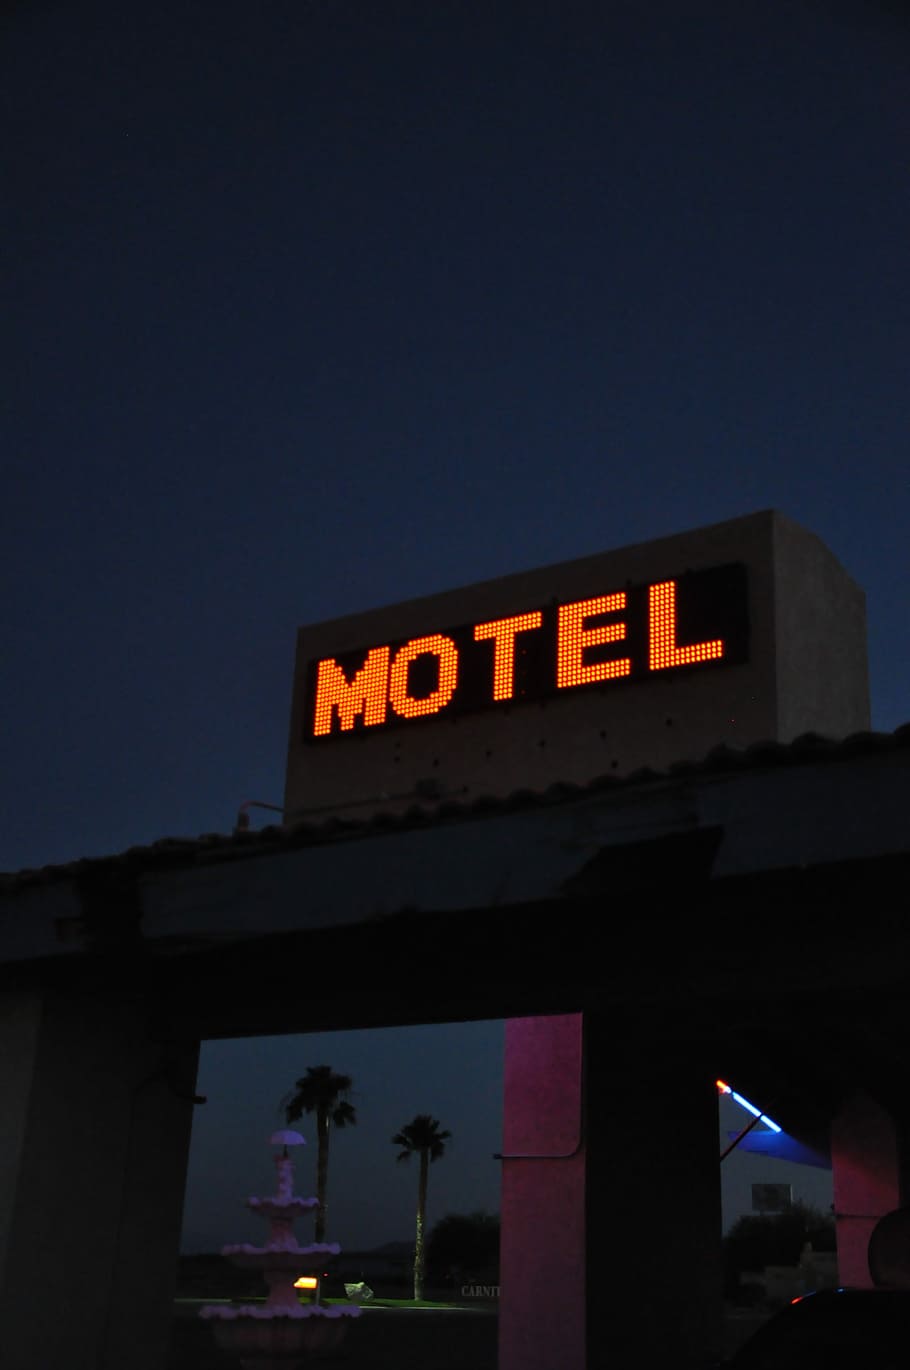 モーテル, 夜, ネオン, ネバダ州, ホテル, 睡眠, 光, 照明, 通信, 建築